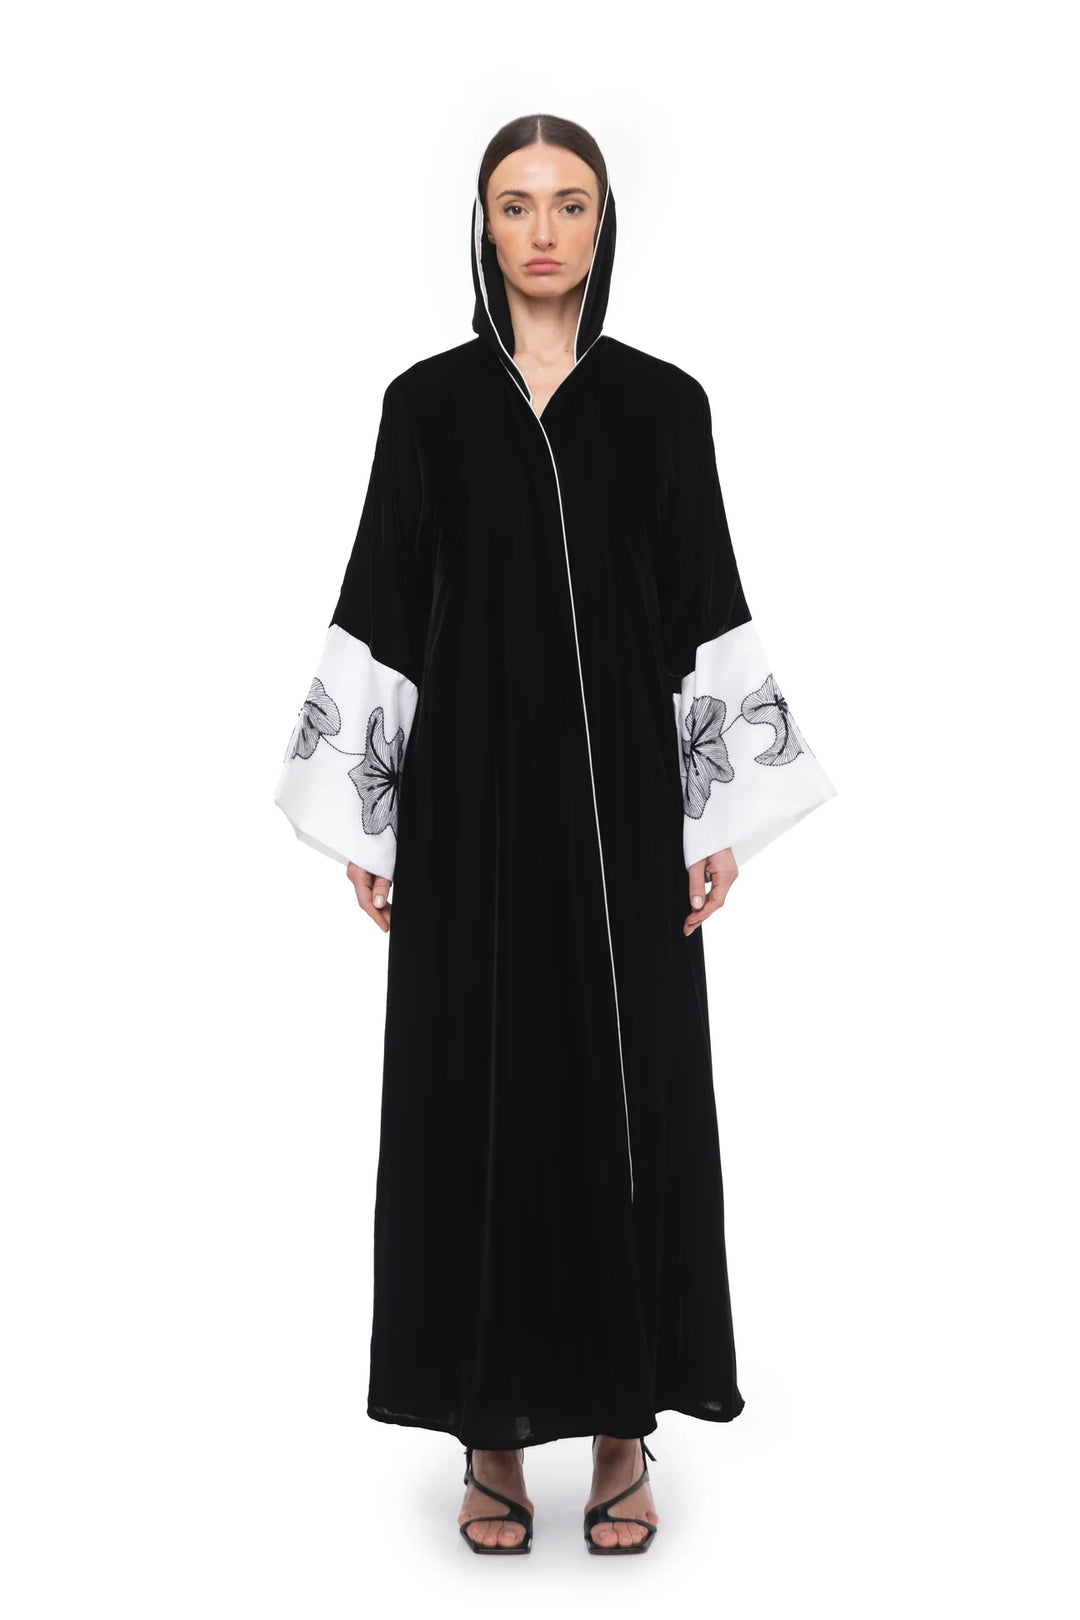 Nera -  Velvet Abaya With White Sleeves Abaya C314